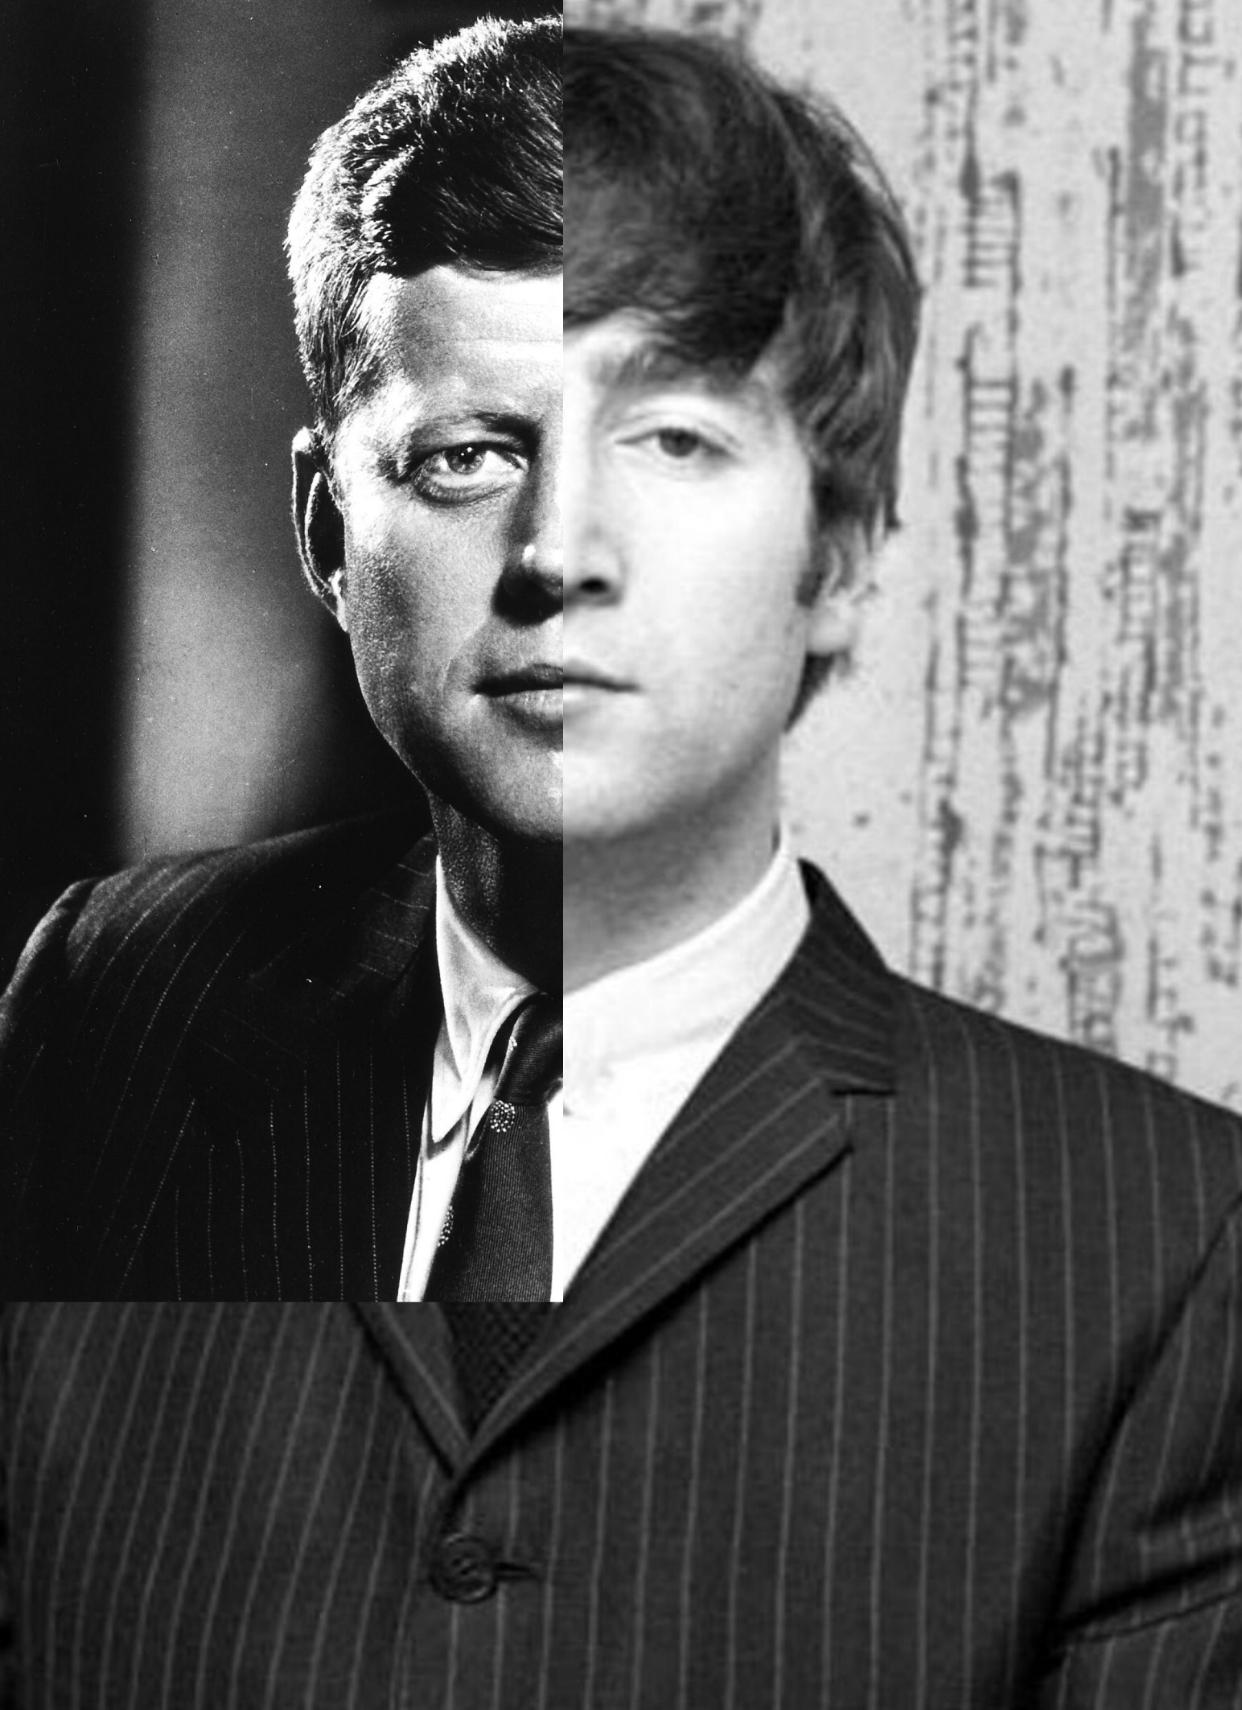 John Kennedy + John Lennon, Zeitgenössische Kunst, Fotografie, 21. Jahrhundert